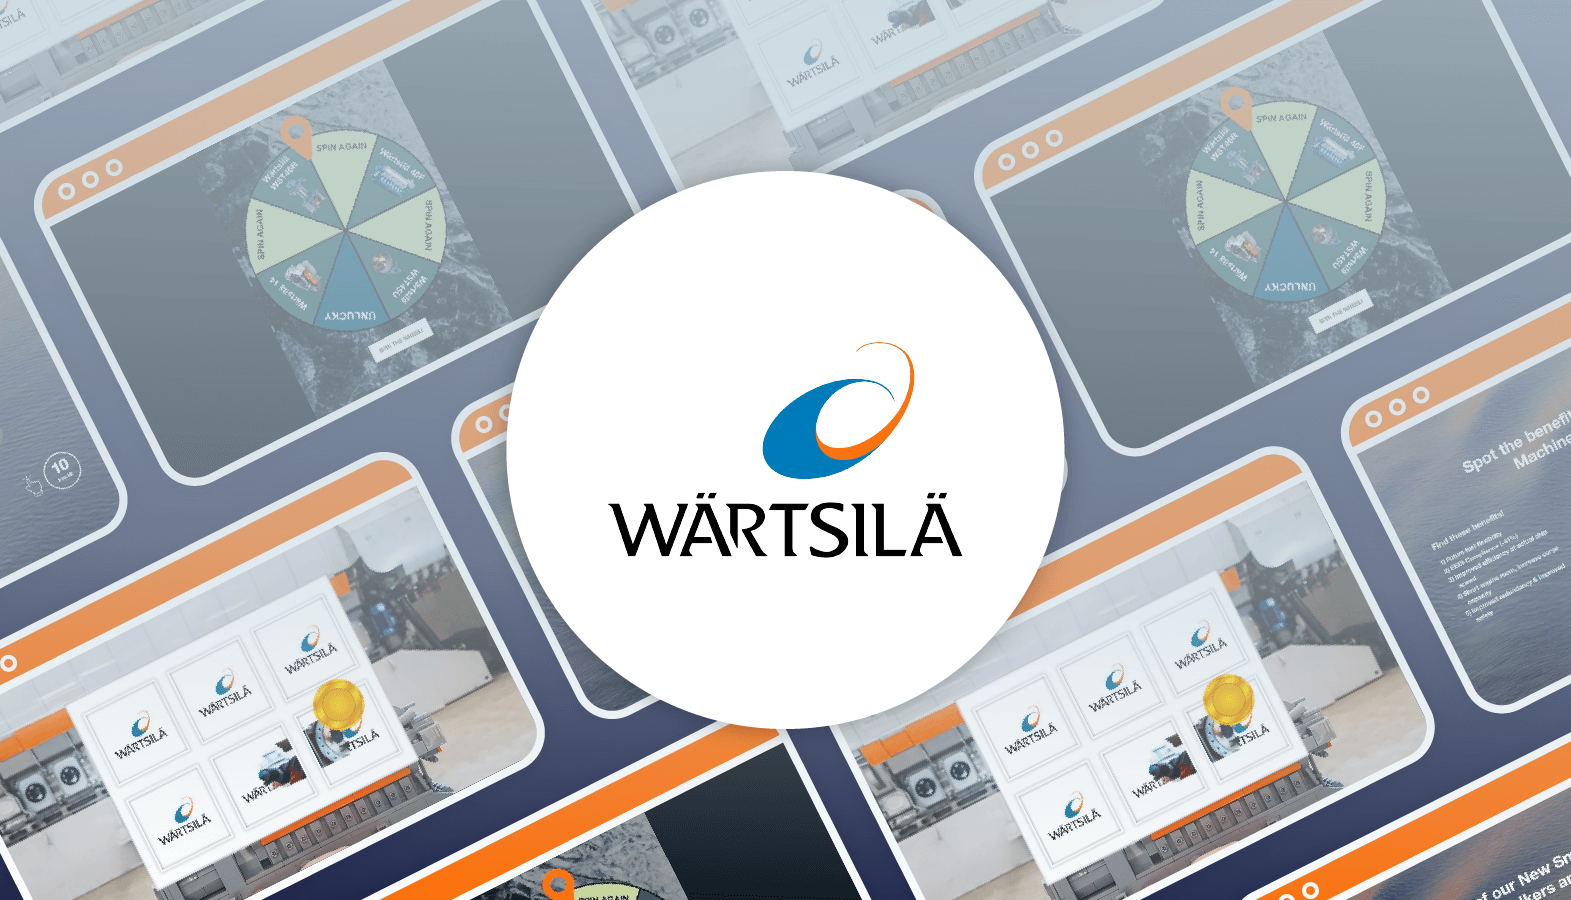 Wärtsilä Customer Story with Playable